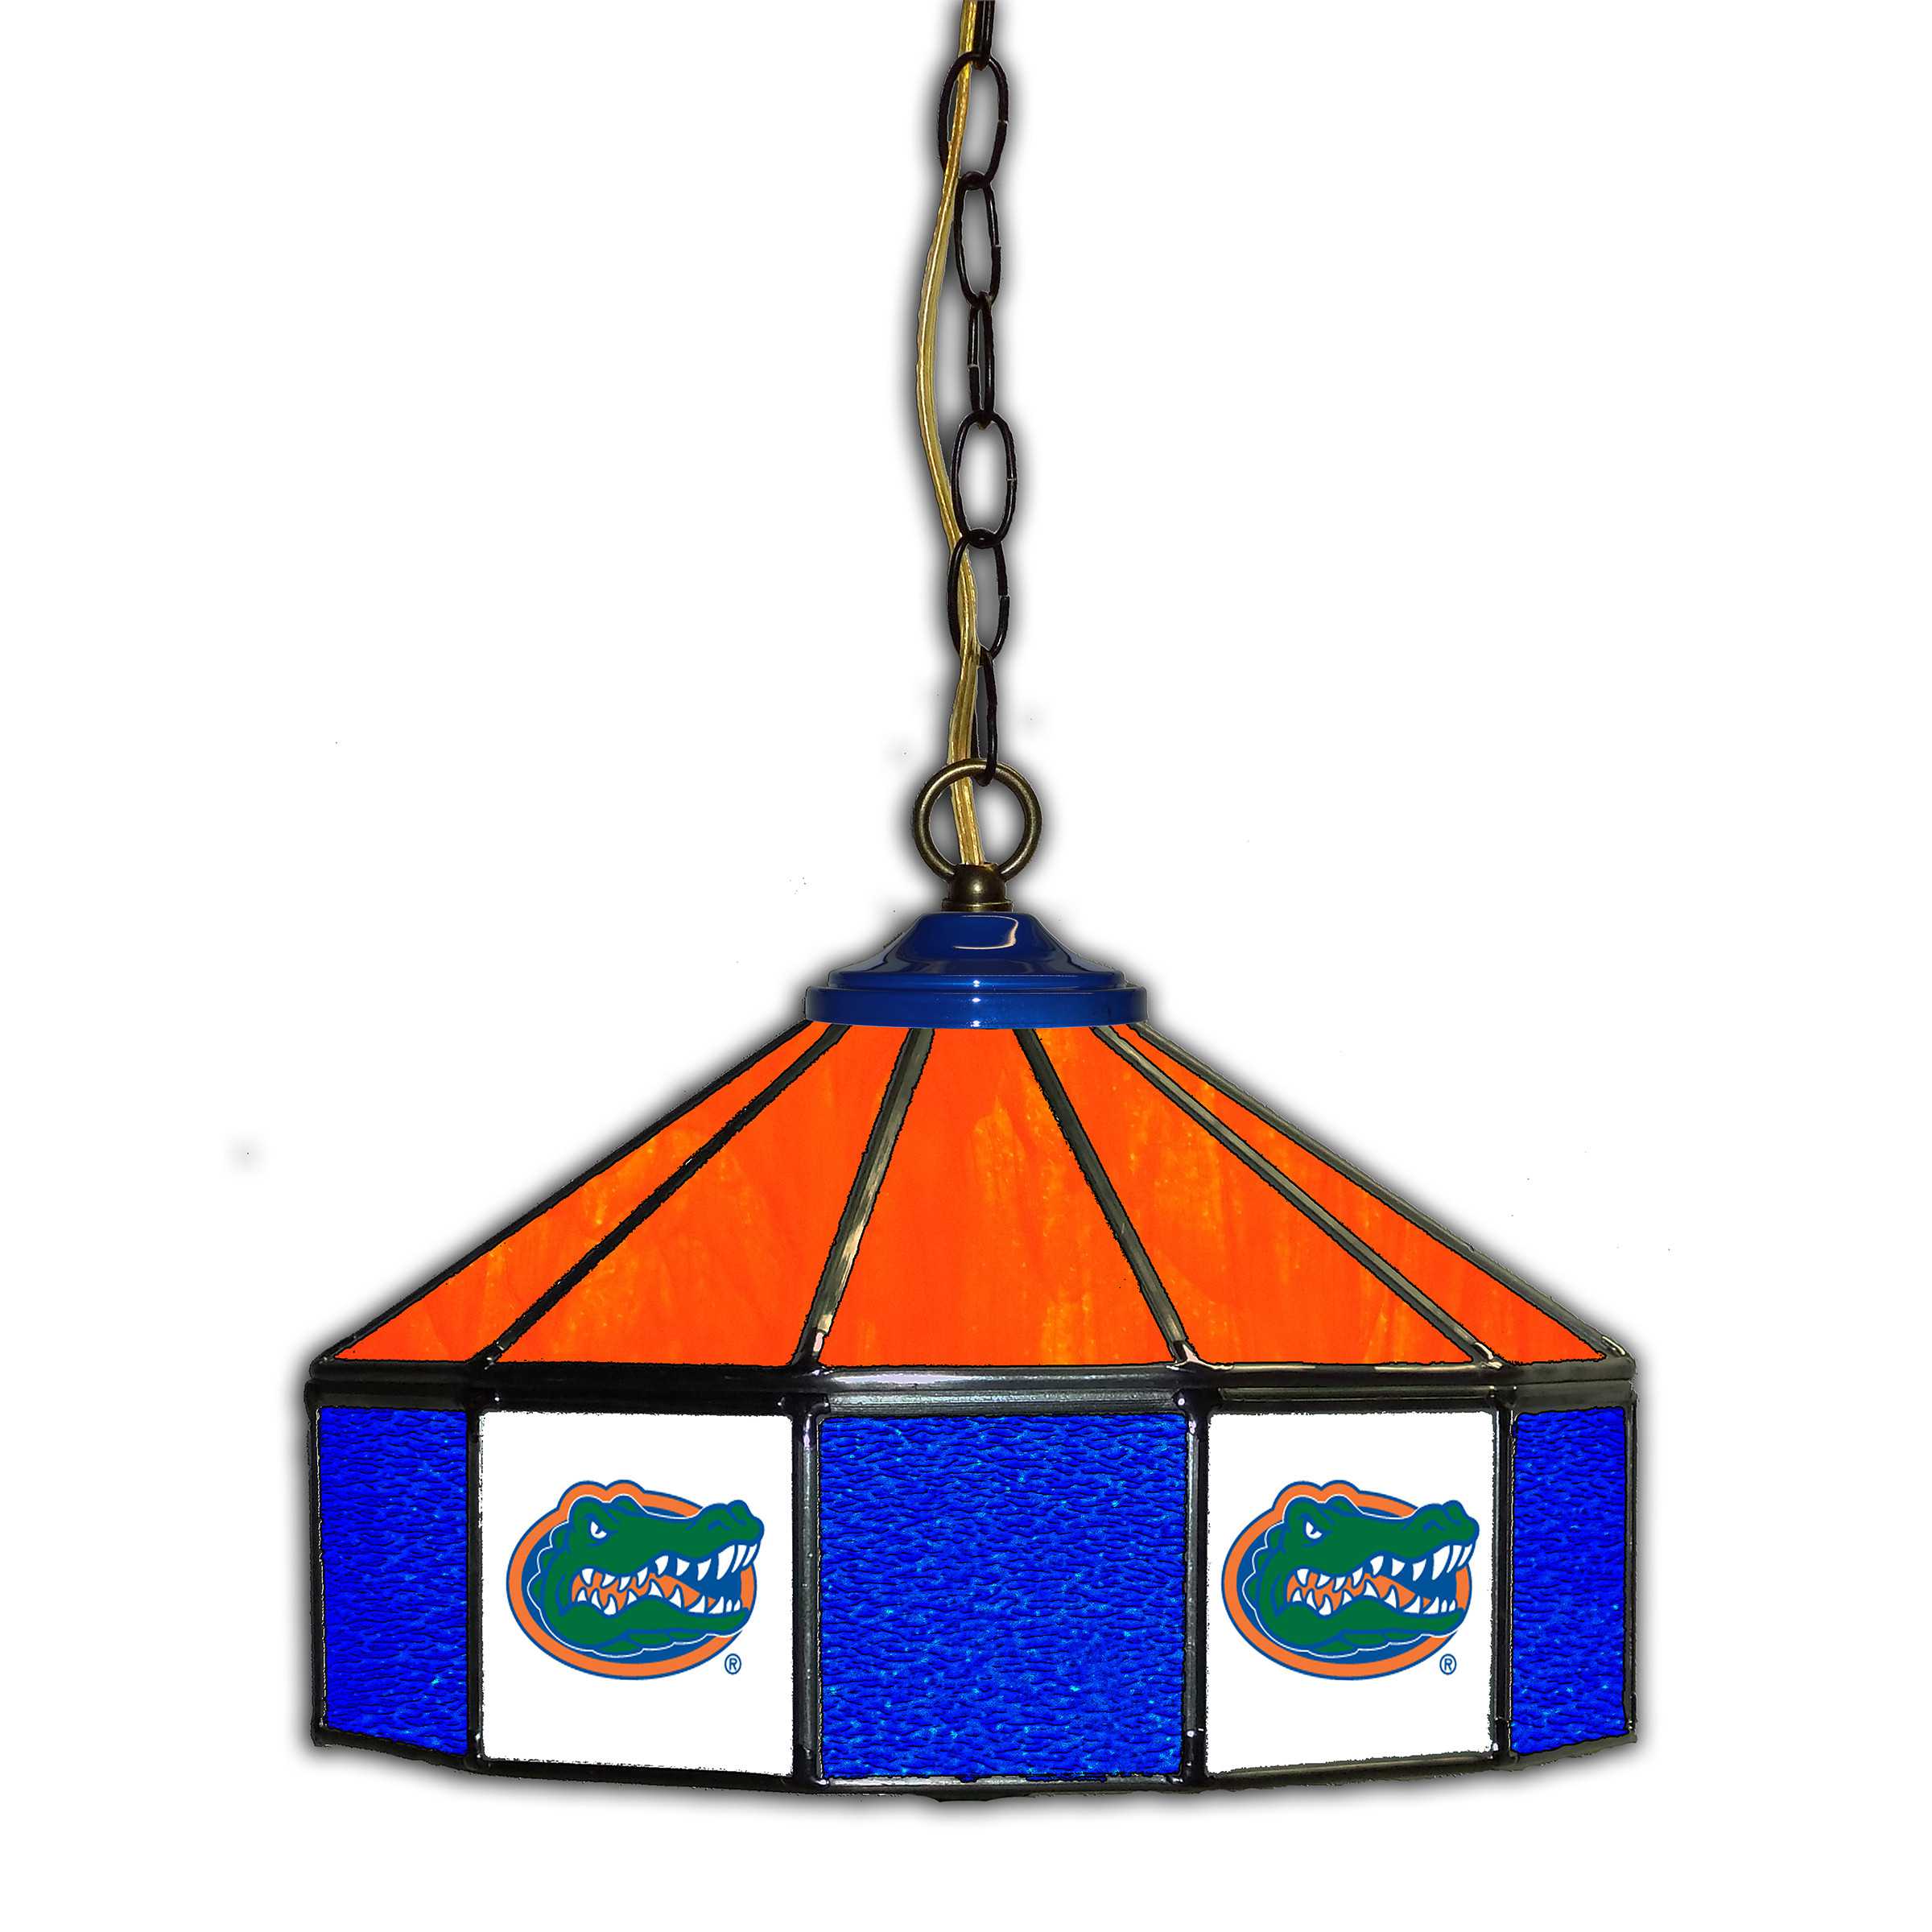 FLORIDA GATORS 14" GLASS PUB LAMP